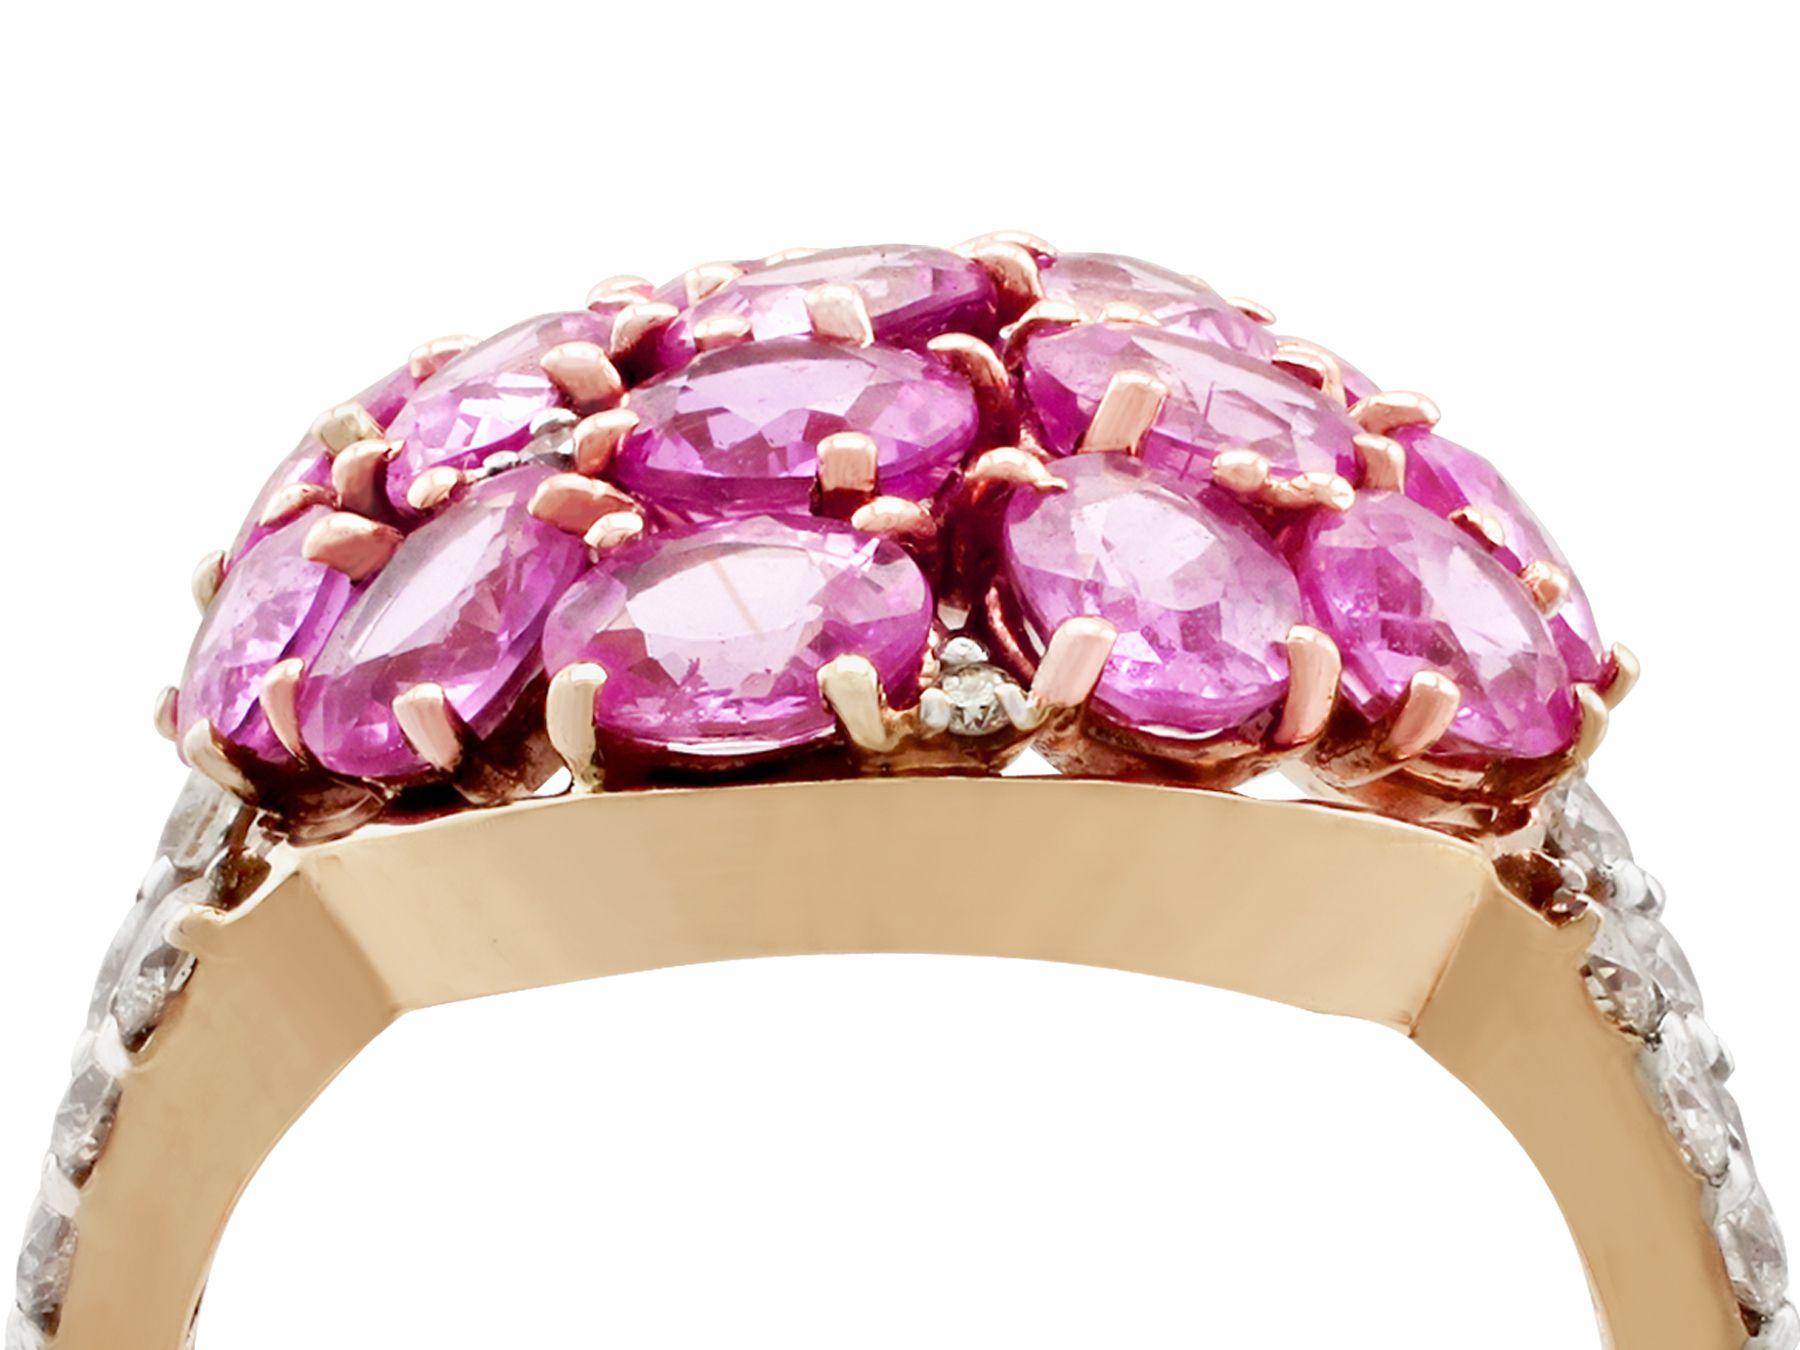 Ein beeindruckender Ring mit 3,99 Karat rosa Saphir und 0,40 Karat Diamant, 18 Karat Gelb- und Weißgold; Teil unserer vielfältigen Edelsteinschmuck- und Estate Jewelry-Kollektionen.

Dieser feine und beeindruckende Ring aus rosa Saphiren mit